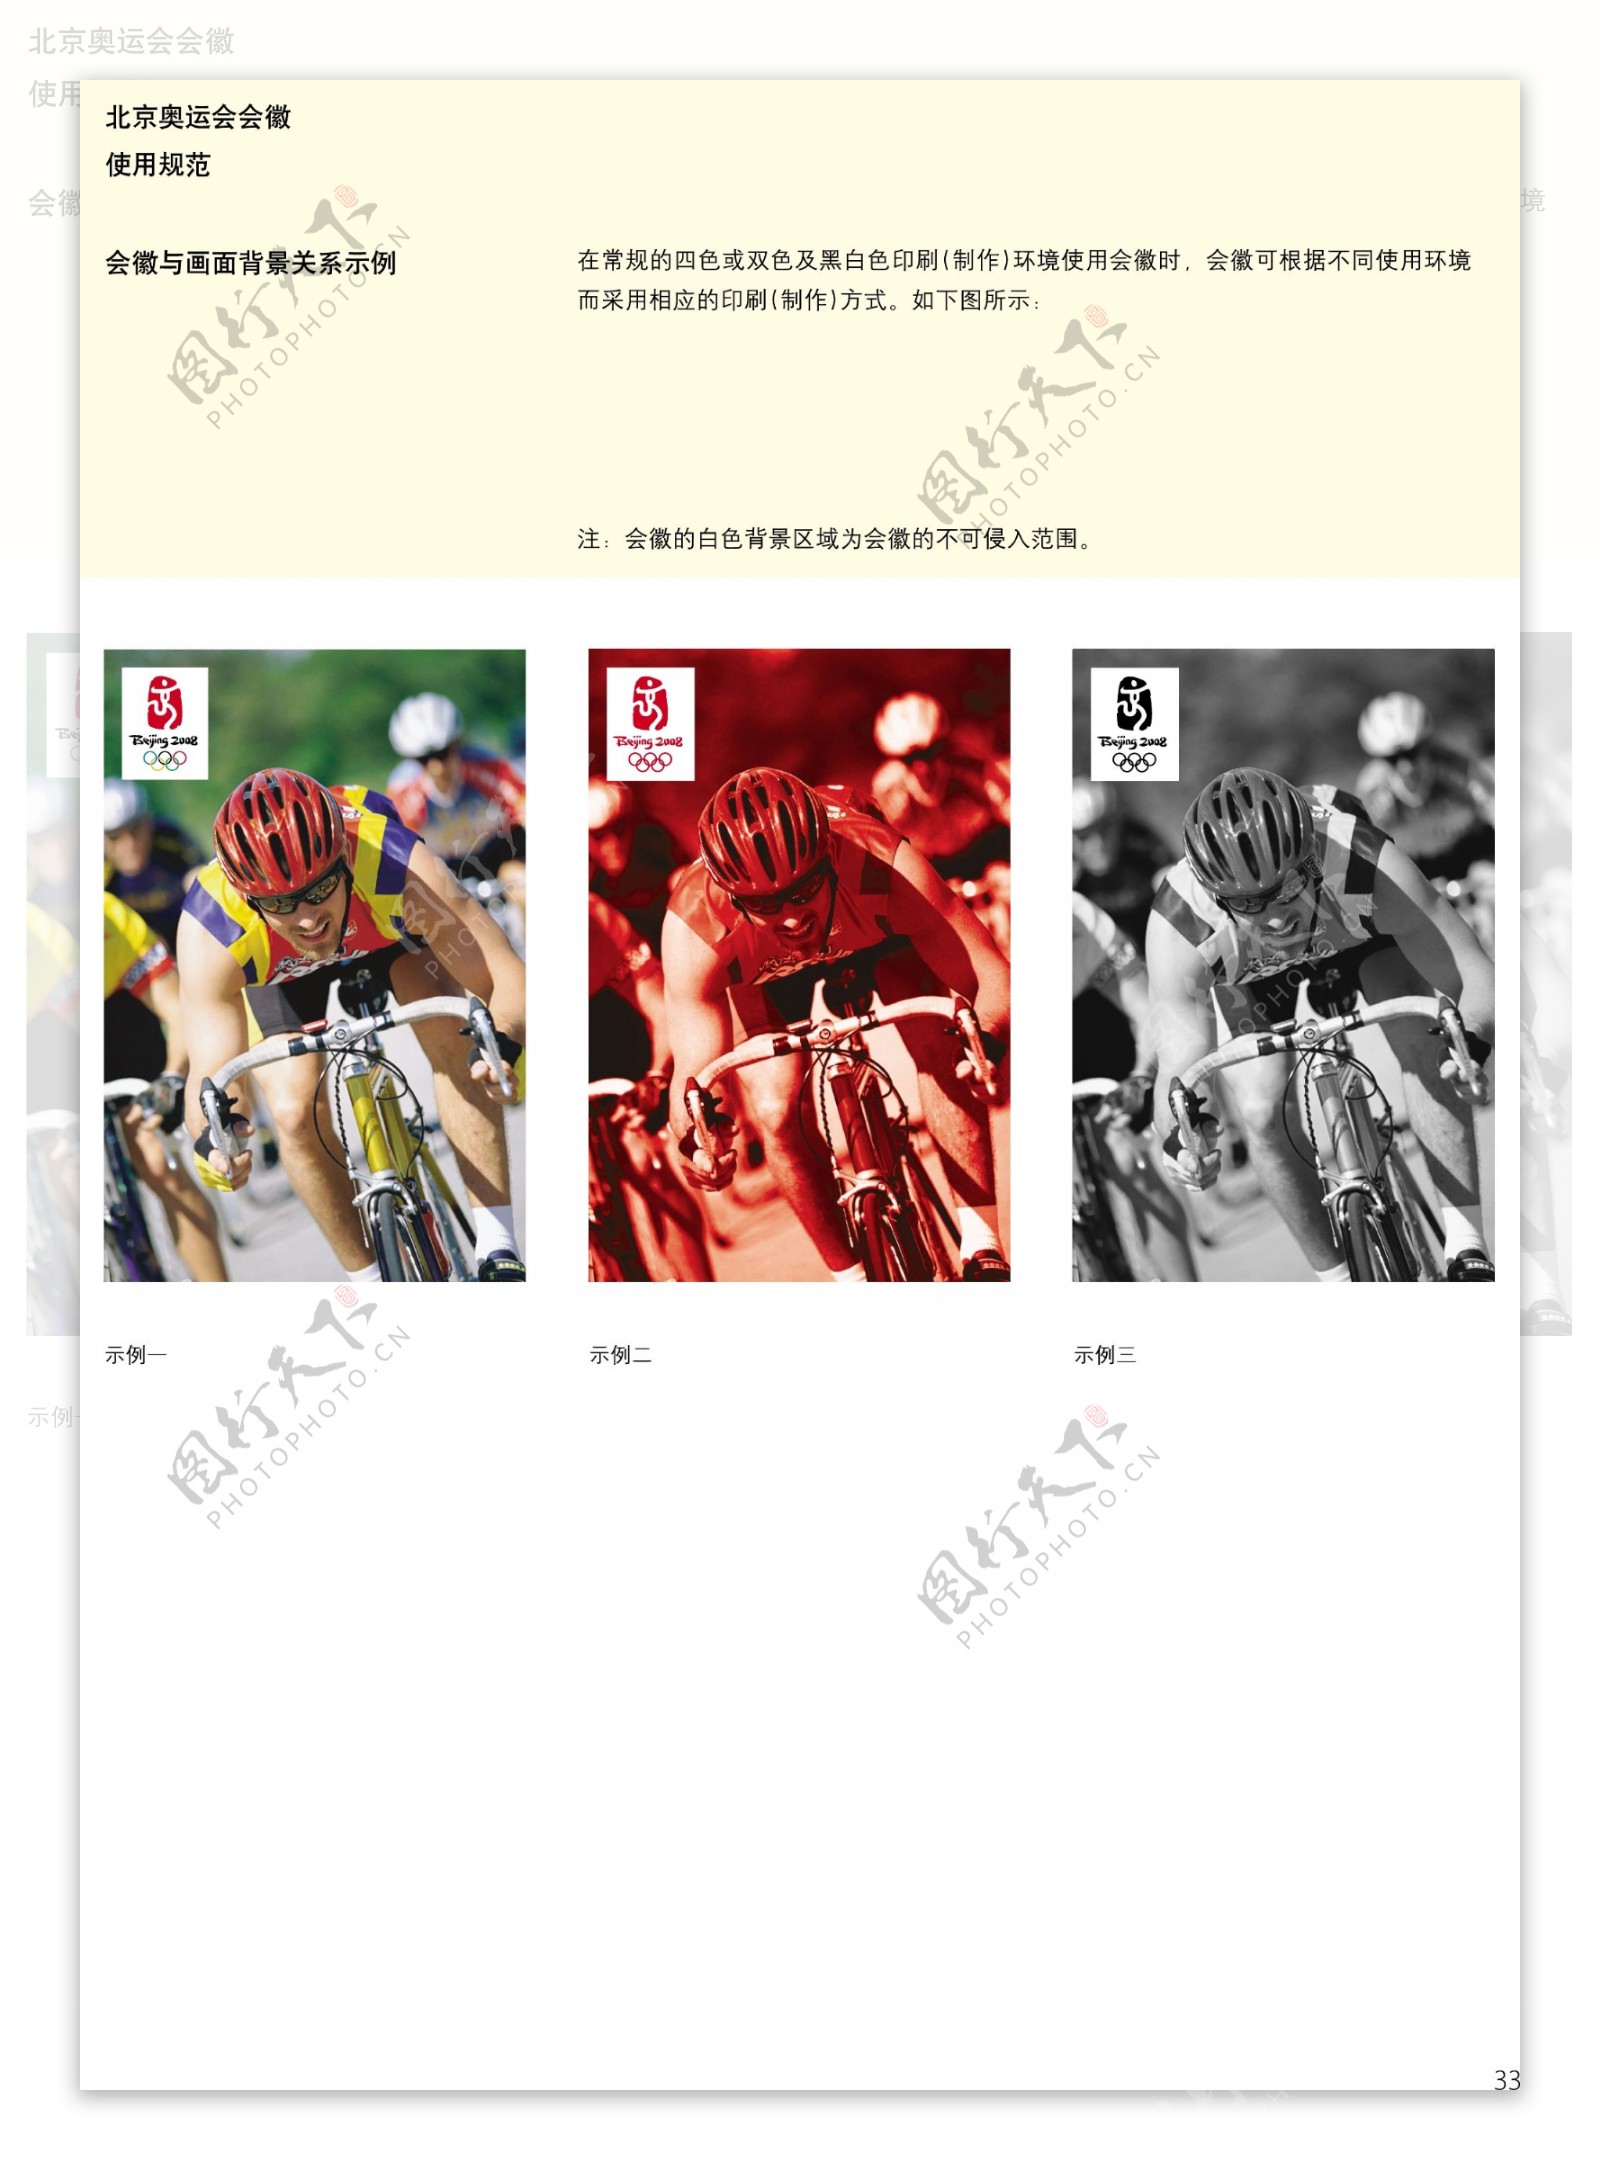 北京2008年奥运会徽规范管理手册中文版完整vi全套图片